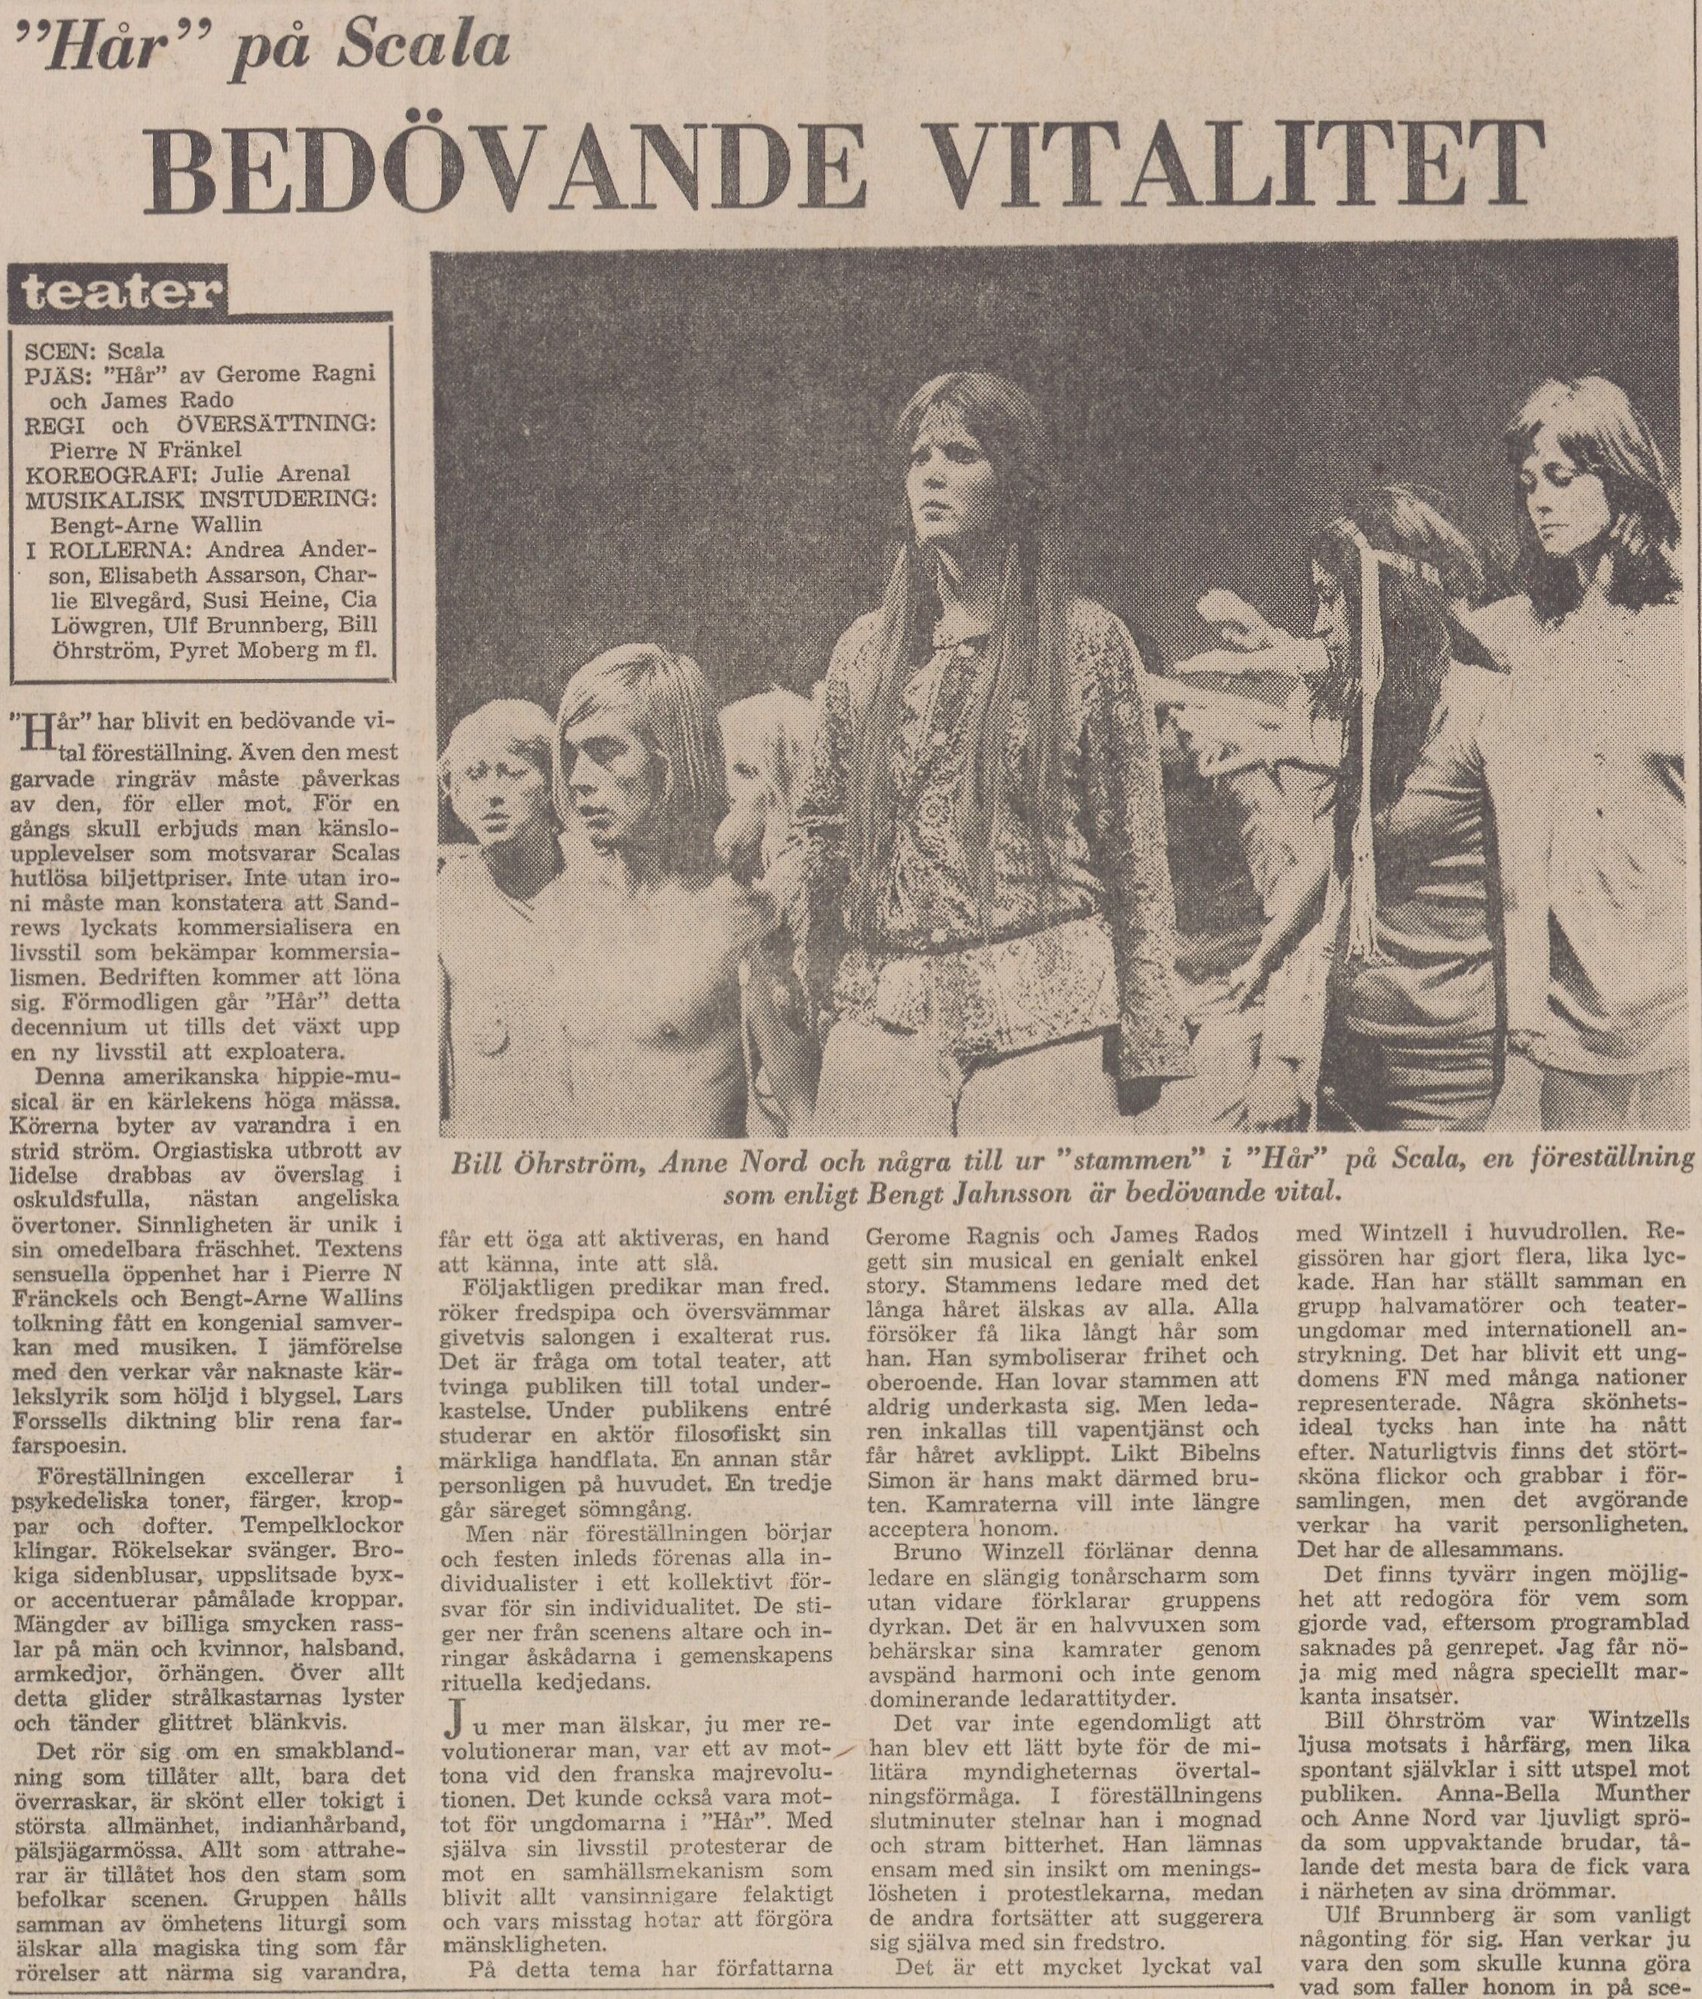 Gulnat tidningsklipp, bild av män och kvinnor på scen utstyrda i hippieklädsel. Text: "Hår" på Scala BEDÖVANDE VITALITET.